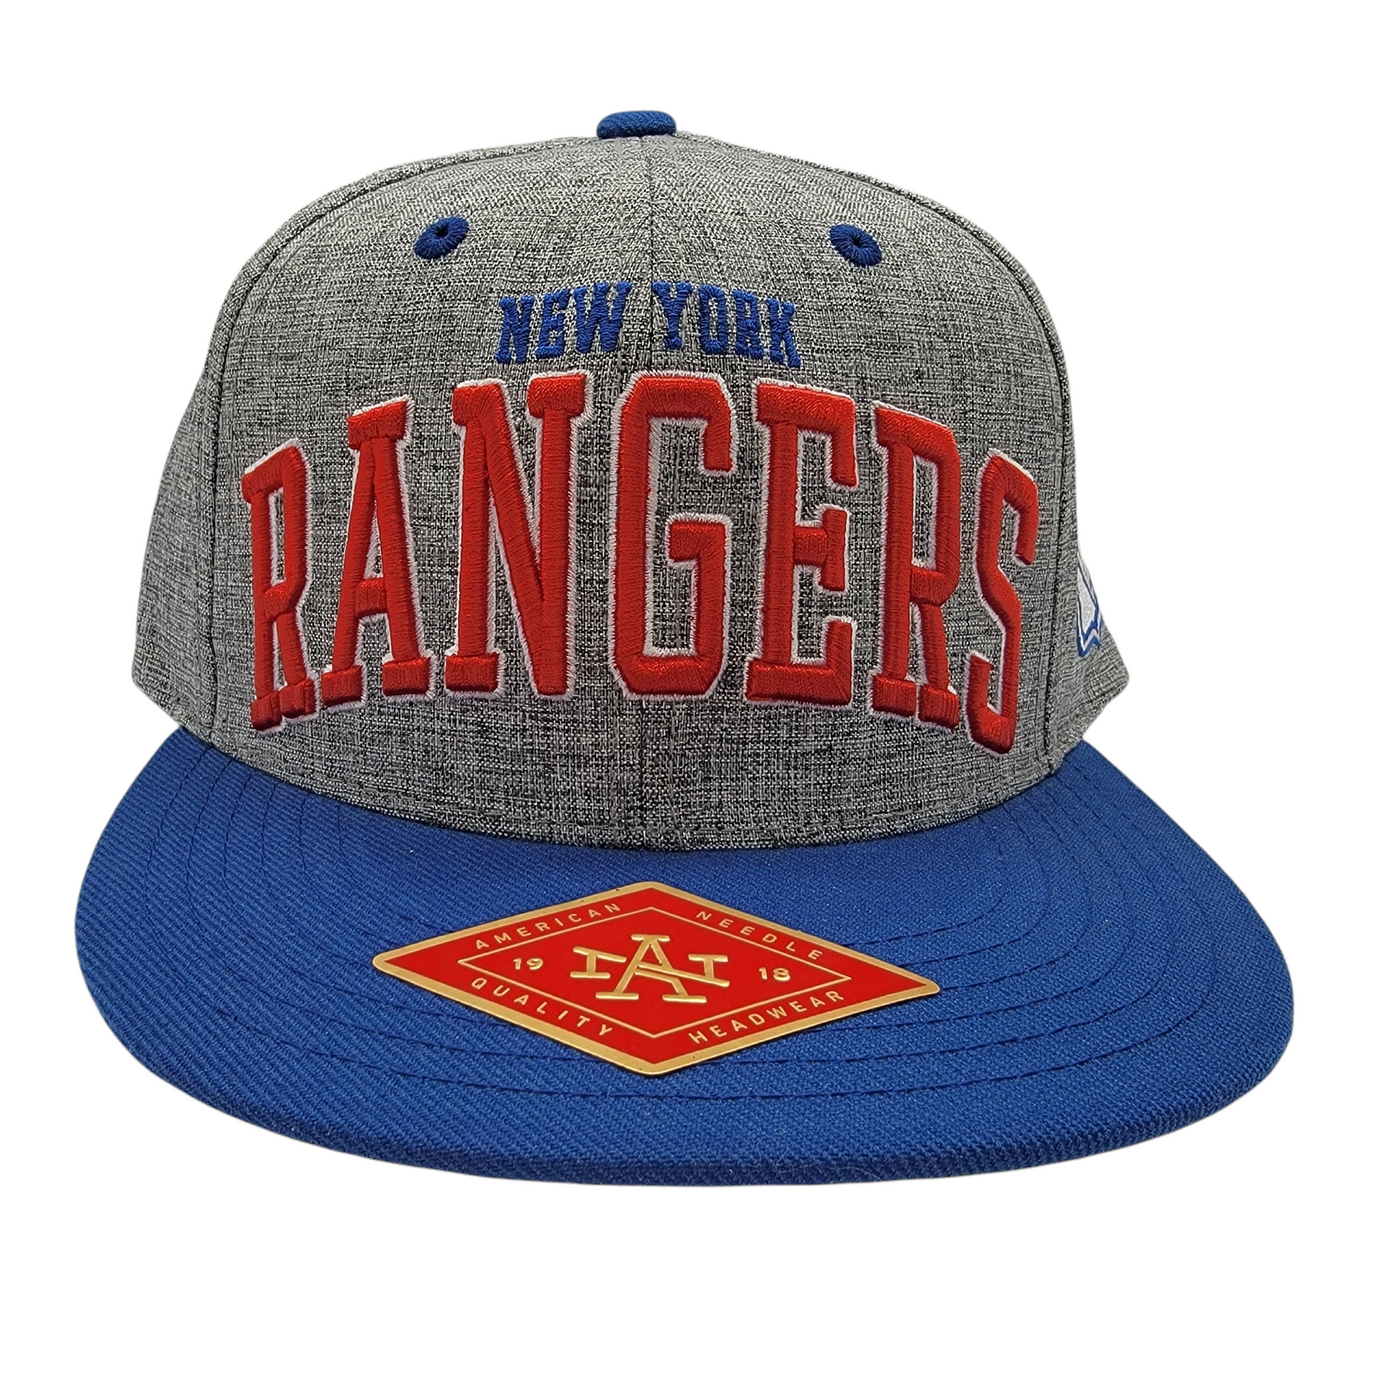 Staton New York Rangers